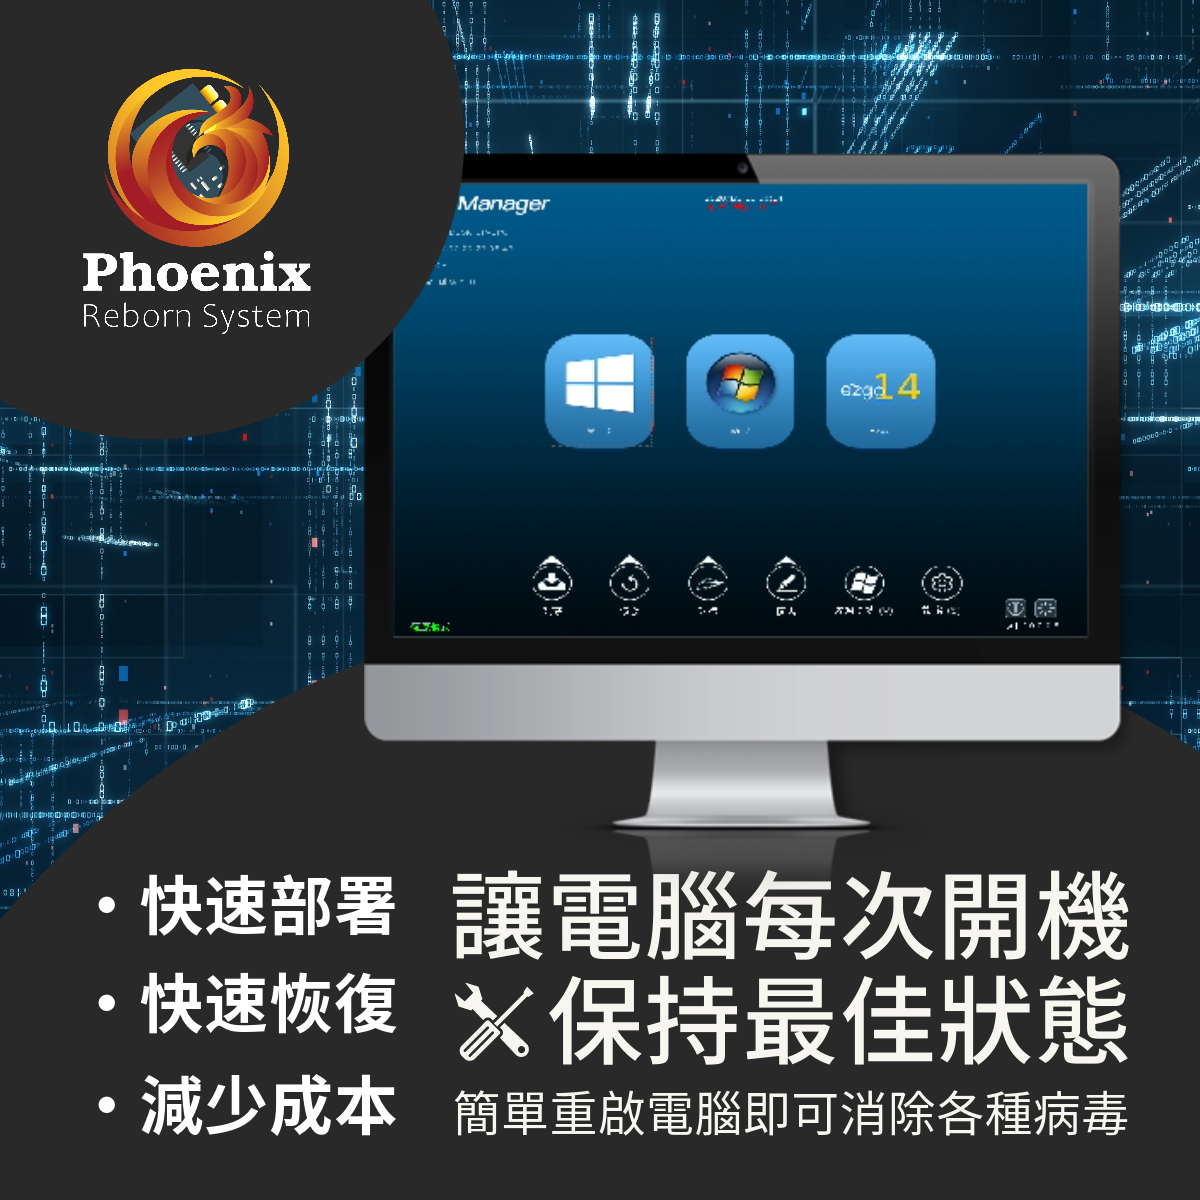 保護您的電腦系統安全和穩定，並體驗 Phoenix 還原系統吧！Phoenix 還原系統是一個能夠迅速將您的電腦恢復到原始狀態的解決方案。它可以解決因系統出問題、病毒攻擊或操作錯誤而造成的麻煩。

使用 Phoenix 讓你的電腦每次開機都保持最佳狀態，確保教師課堂流暢！降低 I,T 人員日常的維護之時間。 